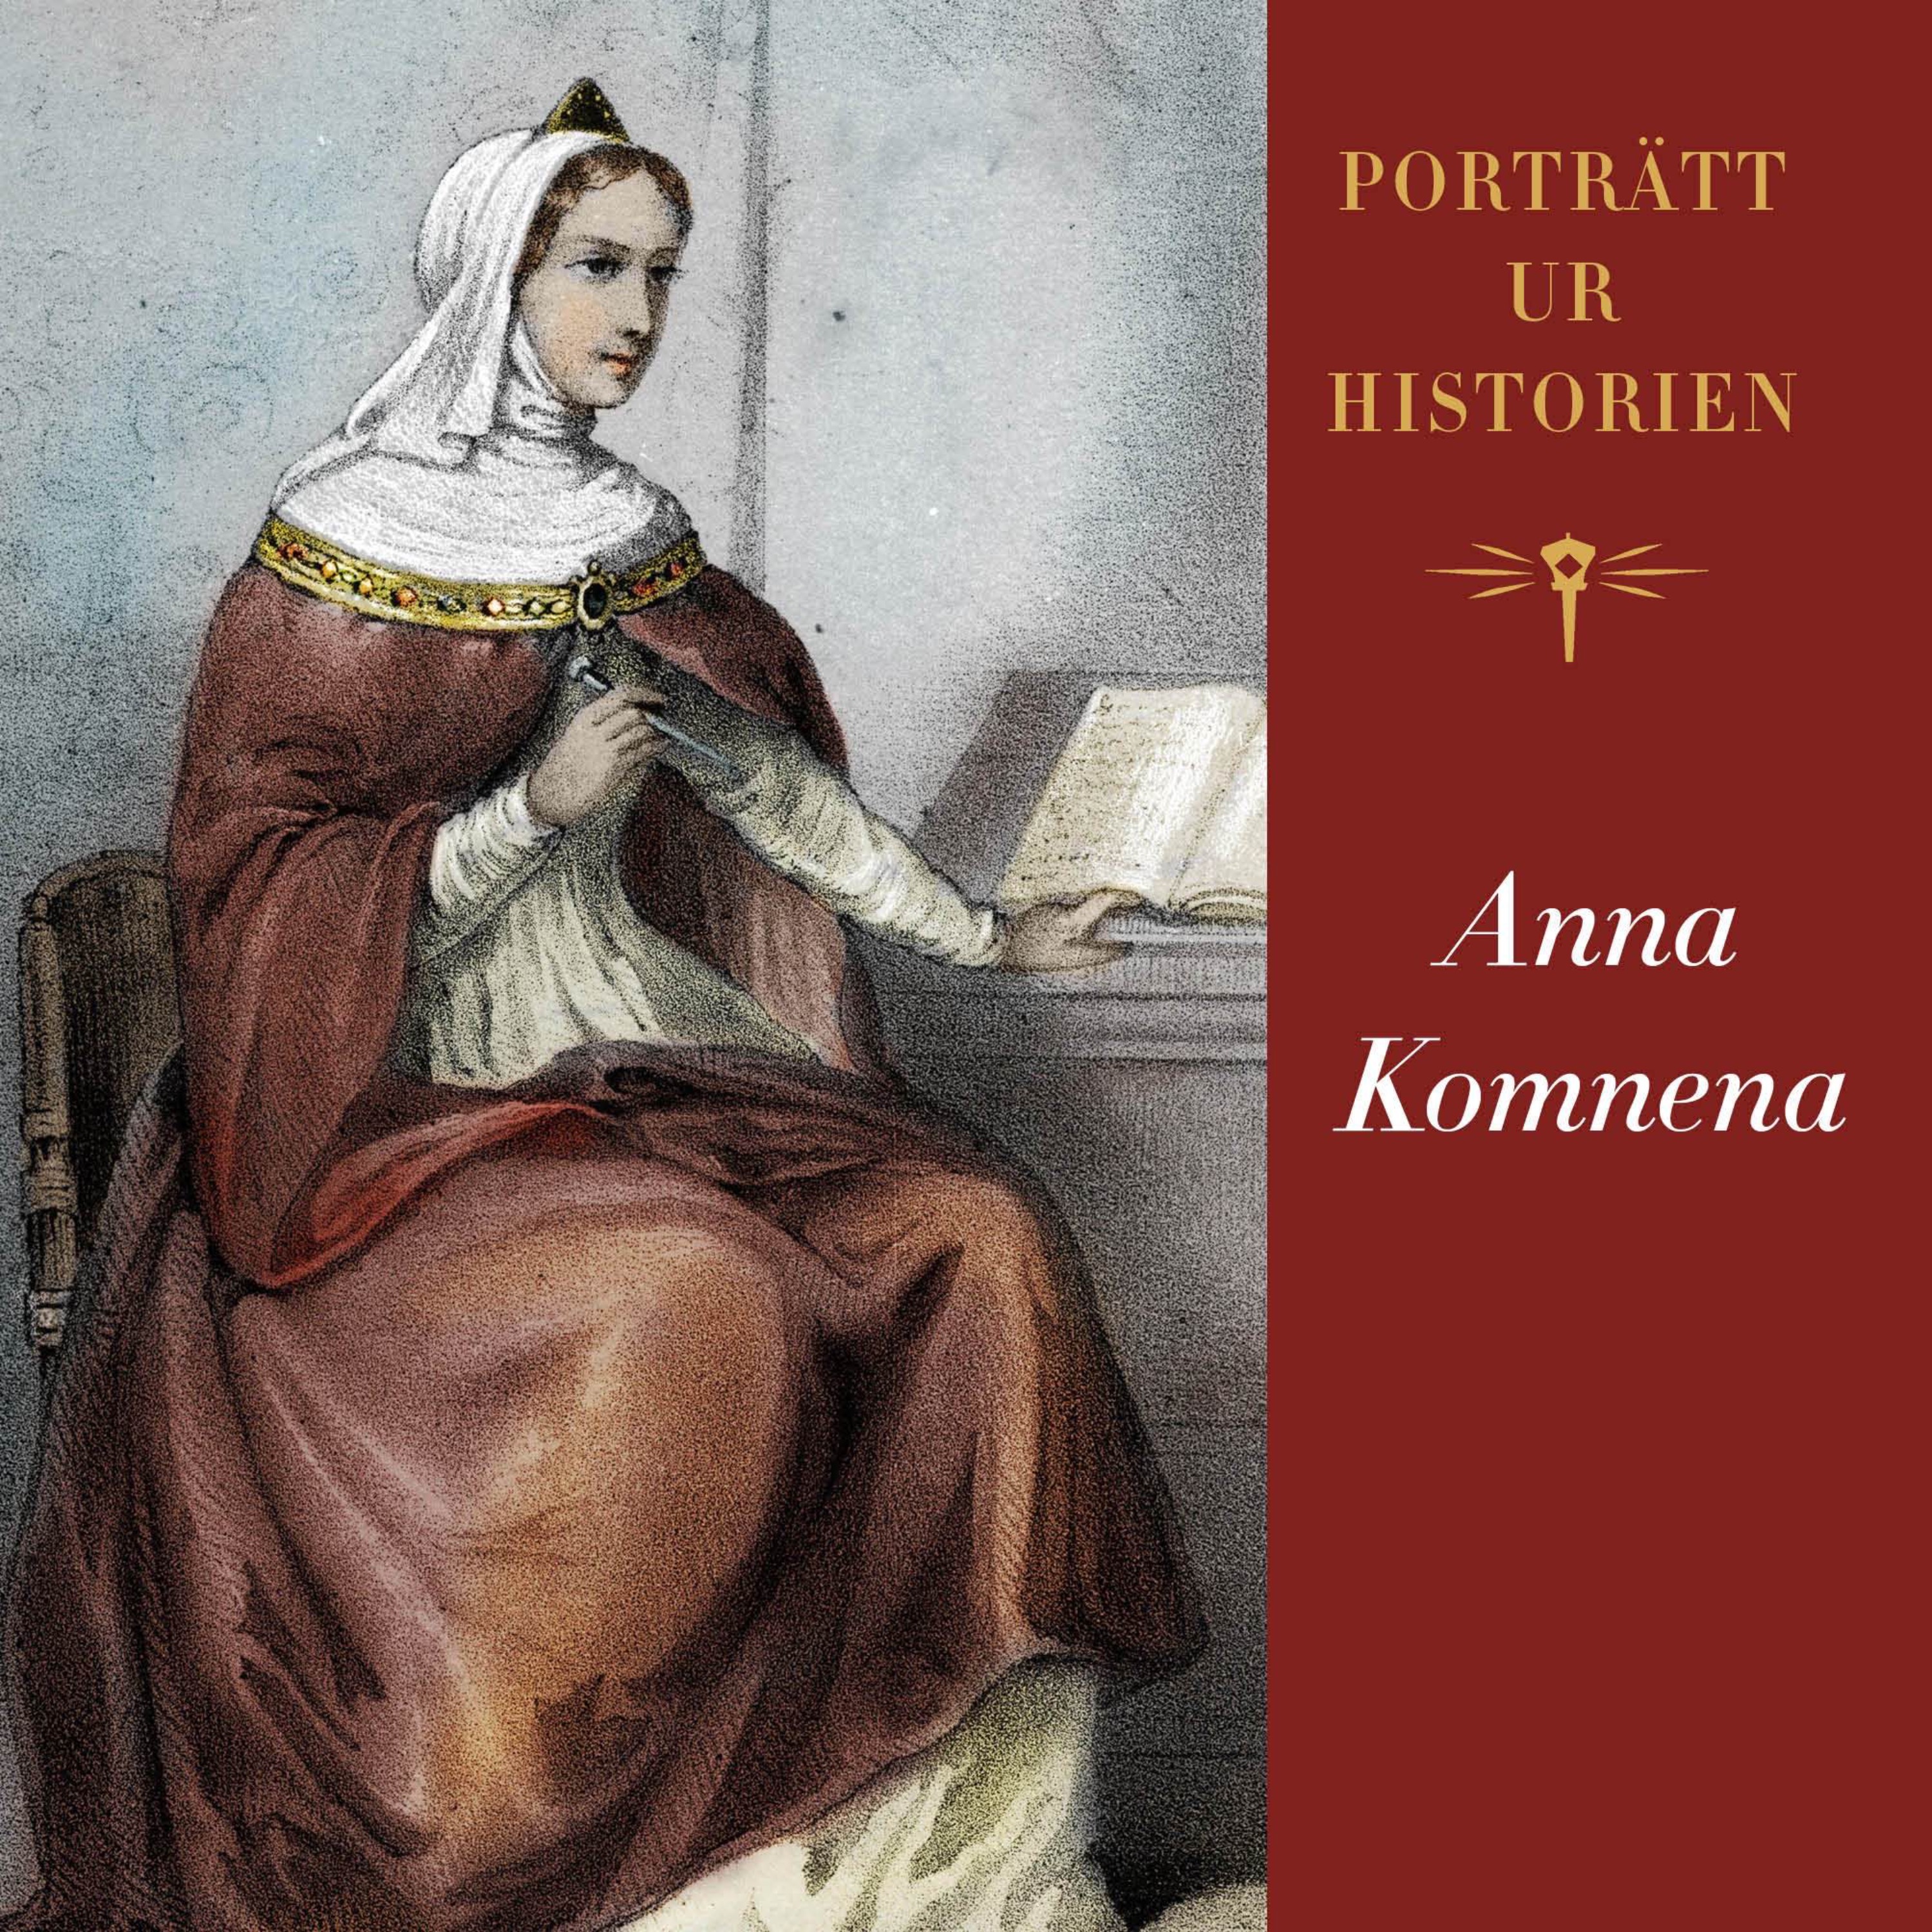 Porträtt ur historien: Anna Komnena